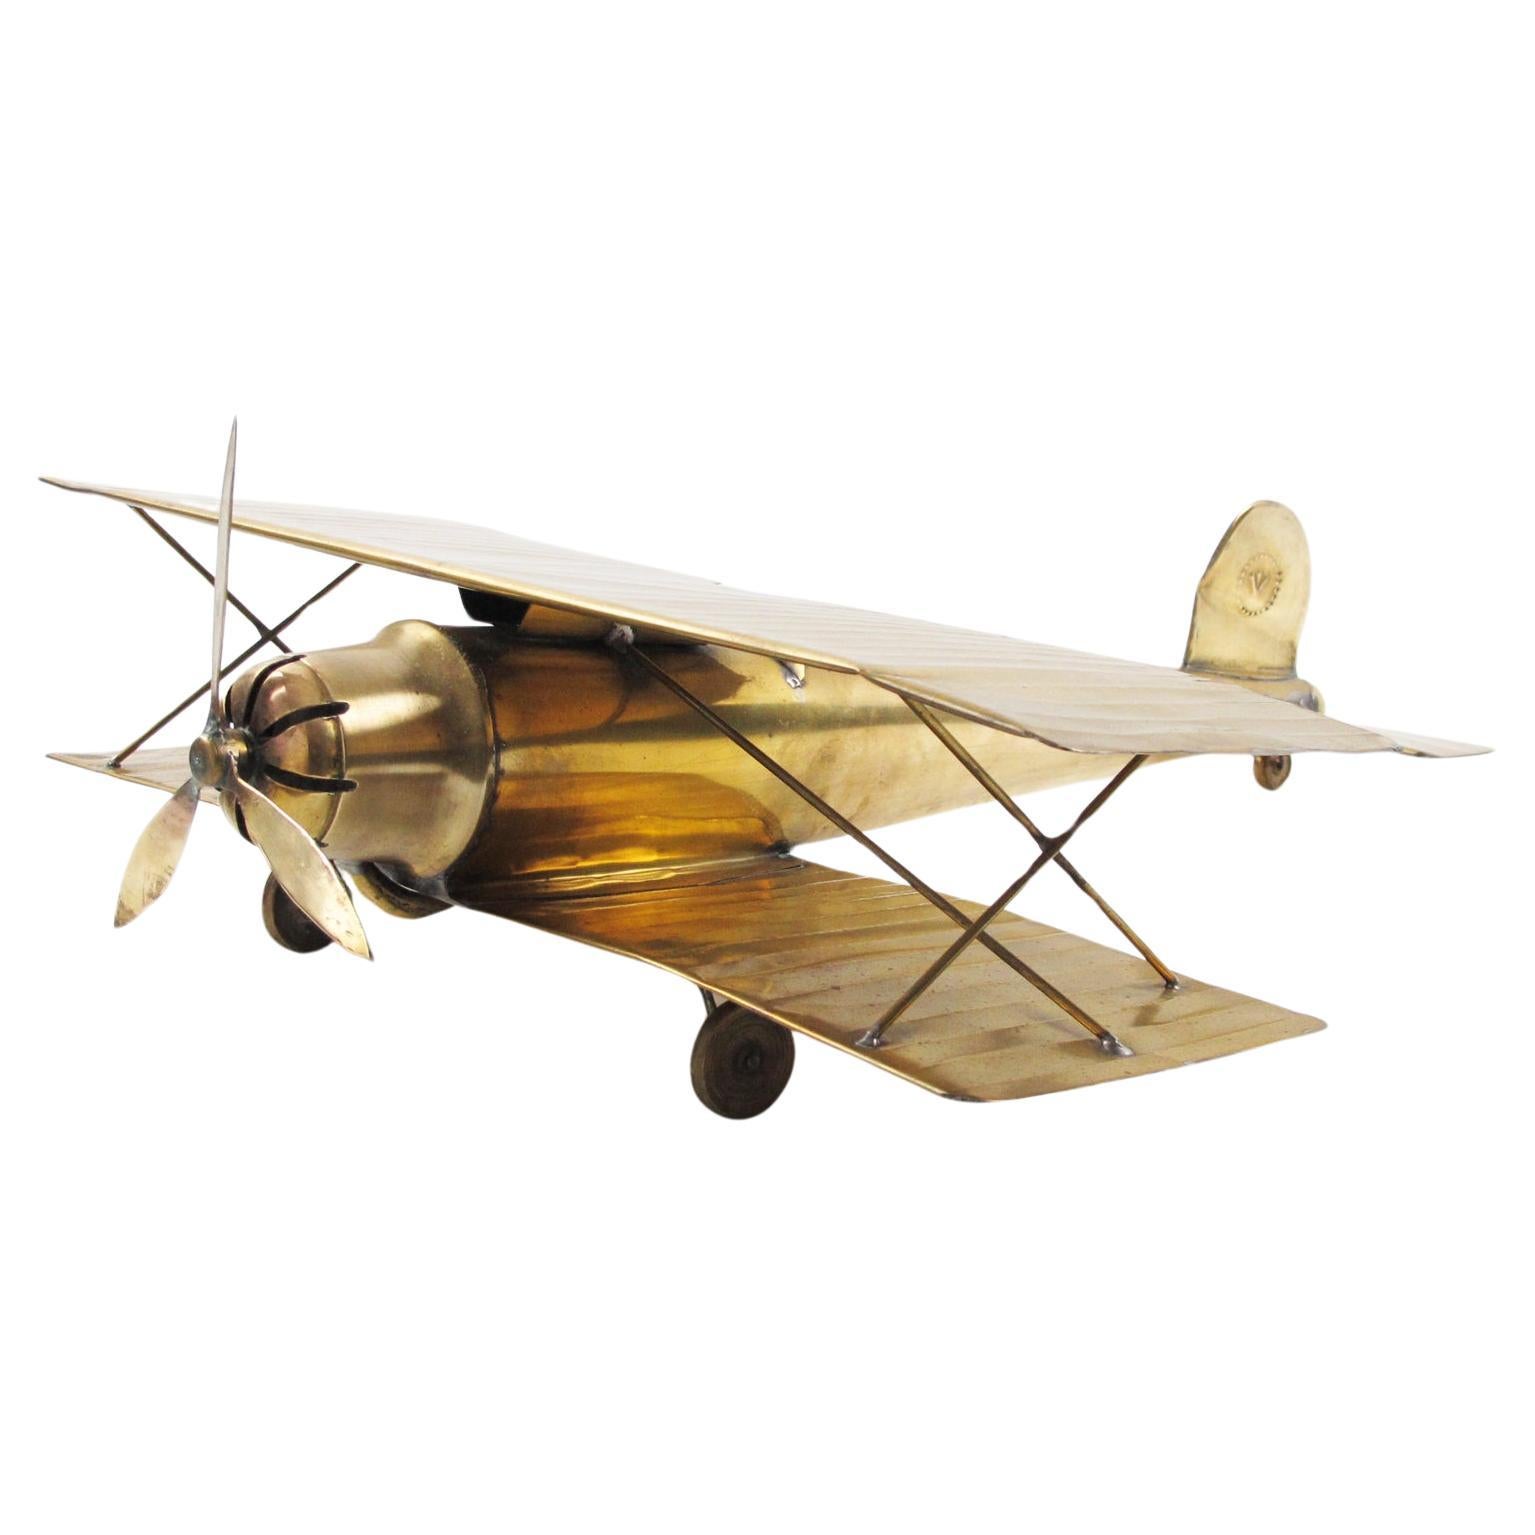 Großformatiges Messing-Flugzeug- Aviation-Modell aus dem Ersten Weltkrieg